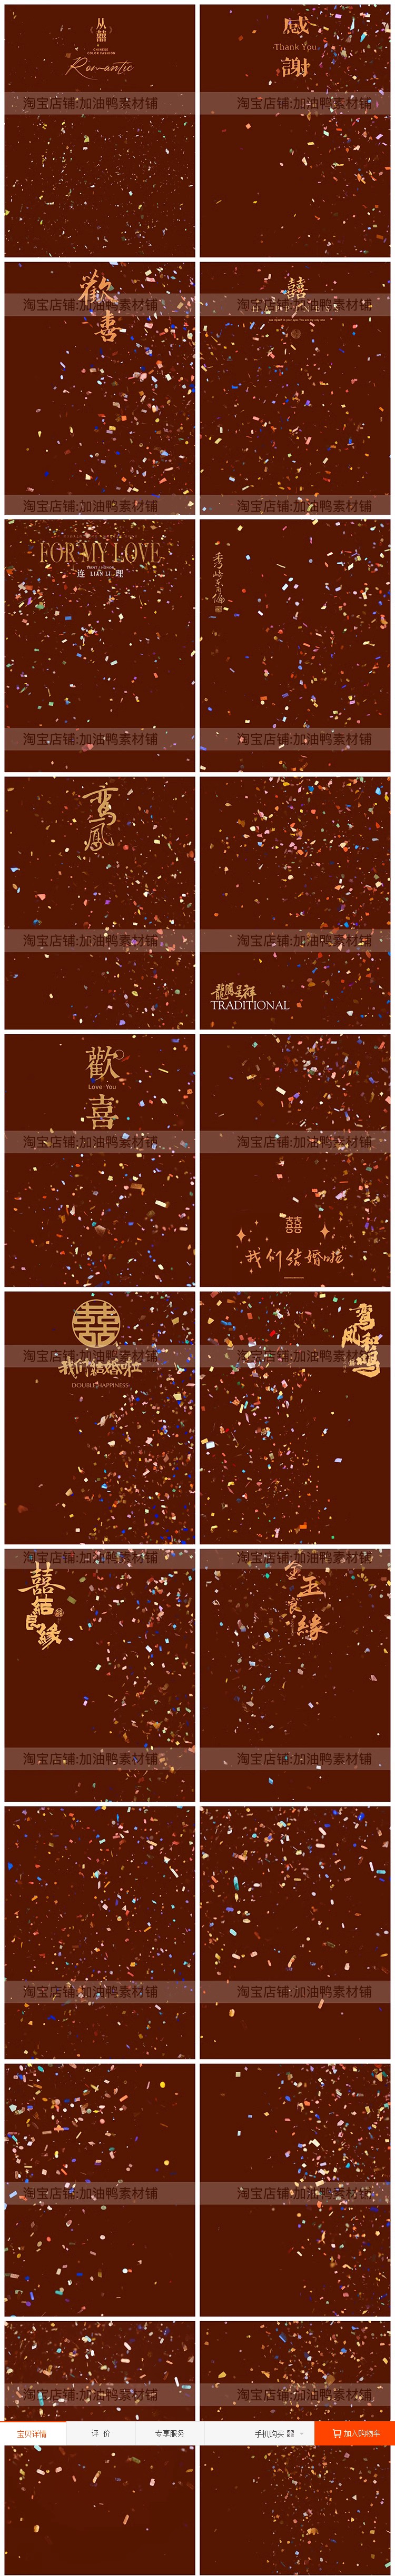 Y1620, Bộ 20 Psd Confetti Chất Liệu Lớp Phủ Ren Ruy Băng Lá Vàng Lễ Hội Váy Cưới Trung Quốc Ghép ảnh Cưới (2)